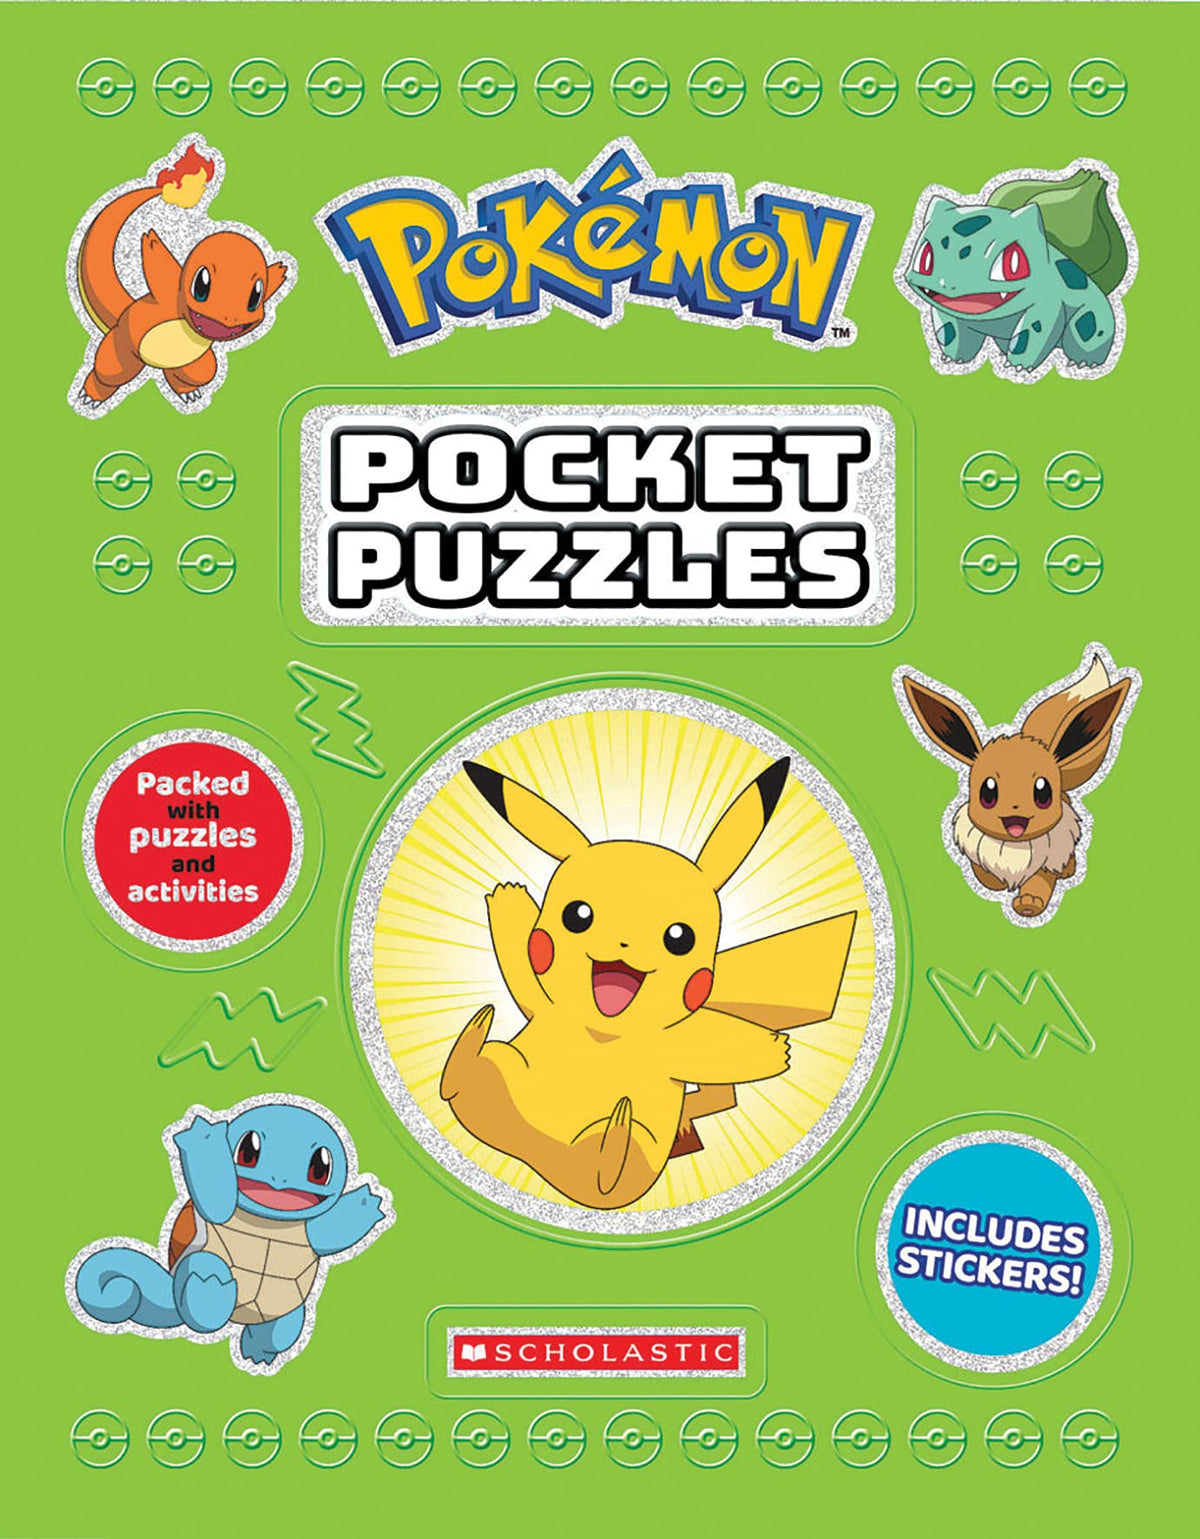 Pokemon: Pocket Puzzles - Third Eye